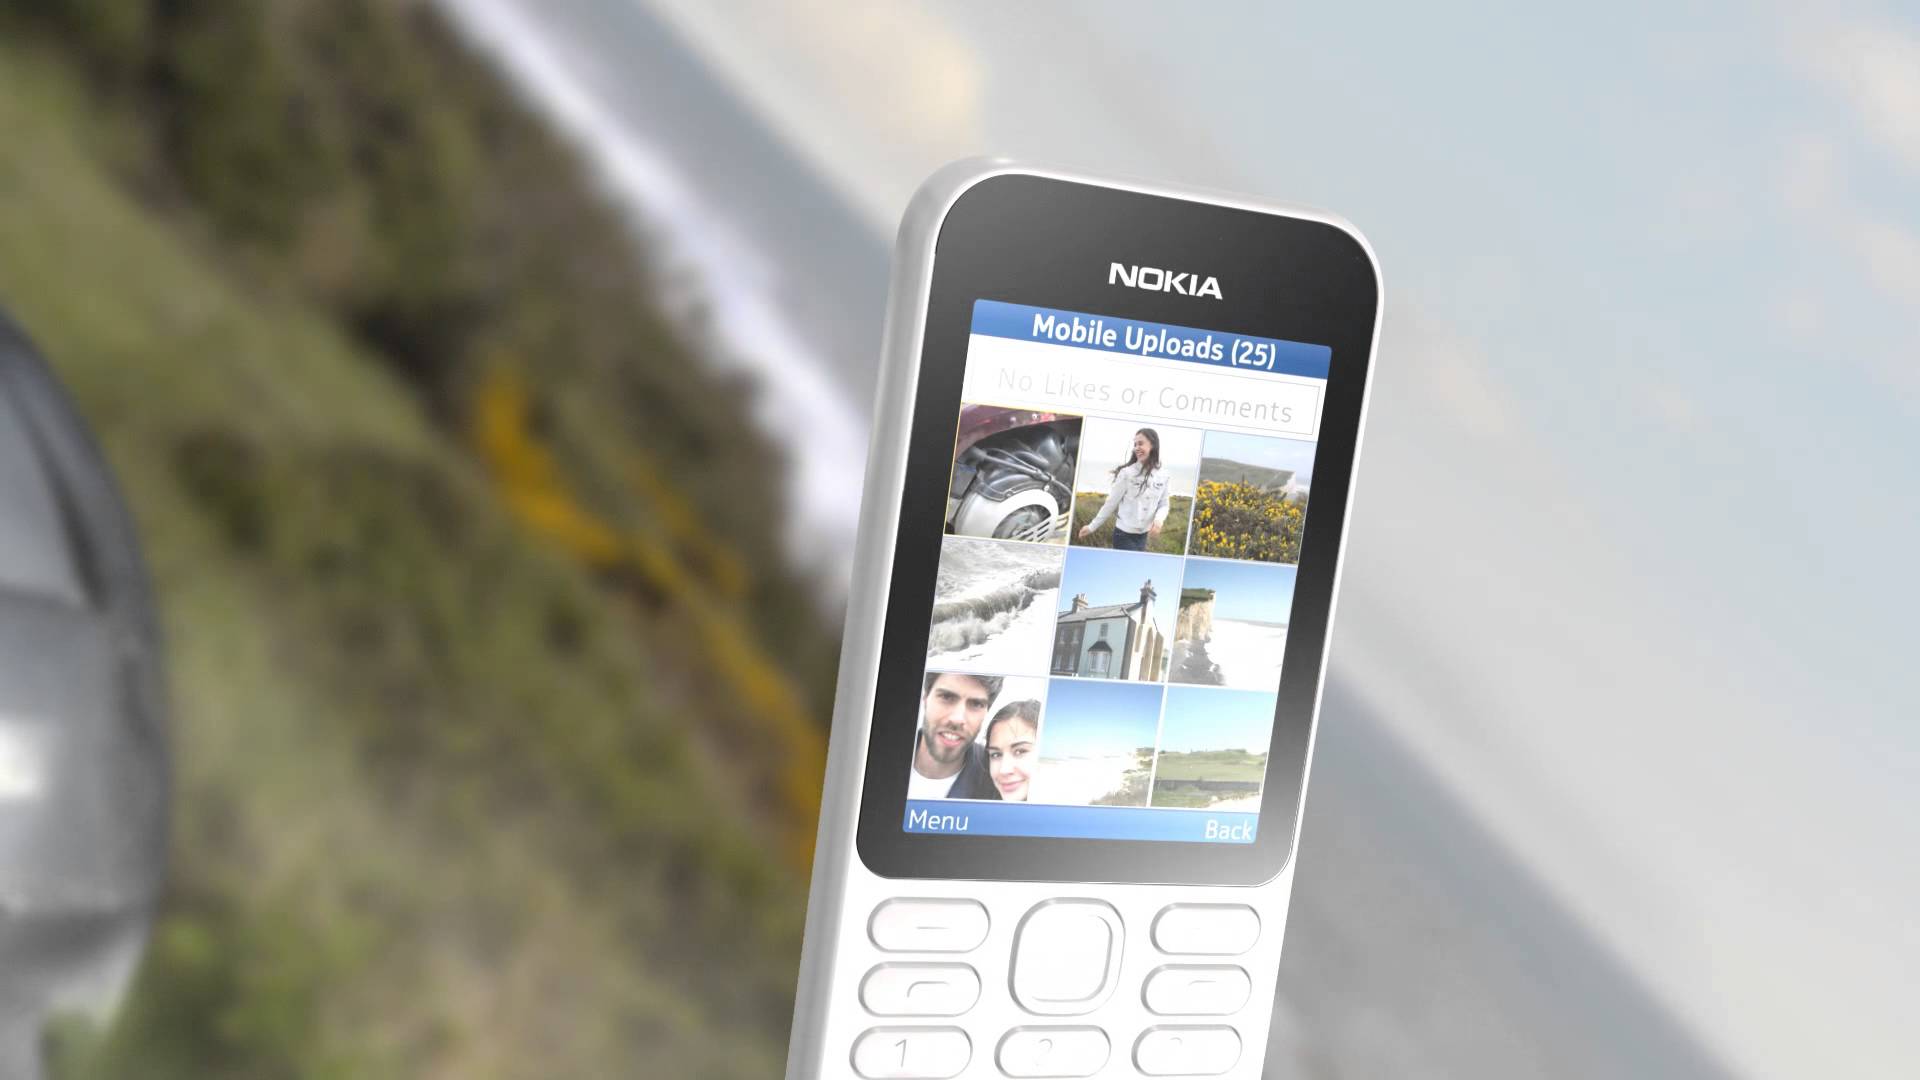 Nokia 222 hỗ trợ nhiều tính năng mạng xã hội